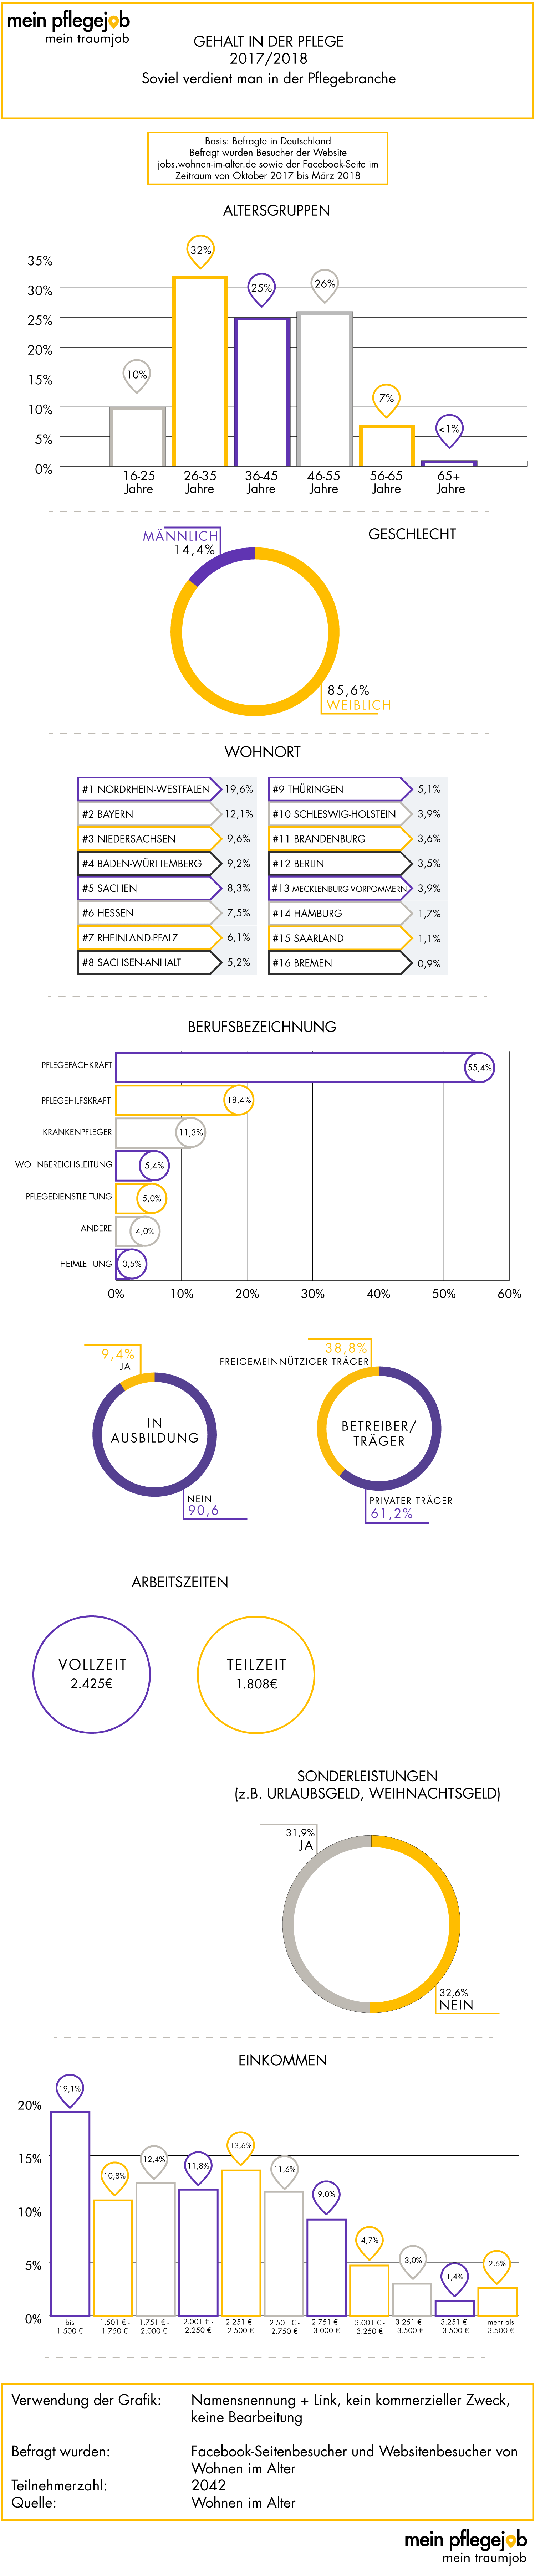 Grafik: Brutto-Gehalt in der Pflegebranche – Daten zu den Teilnehmern